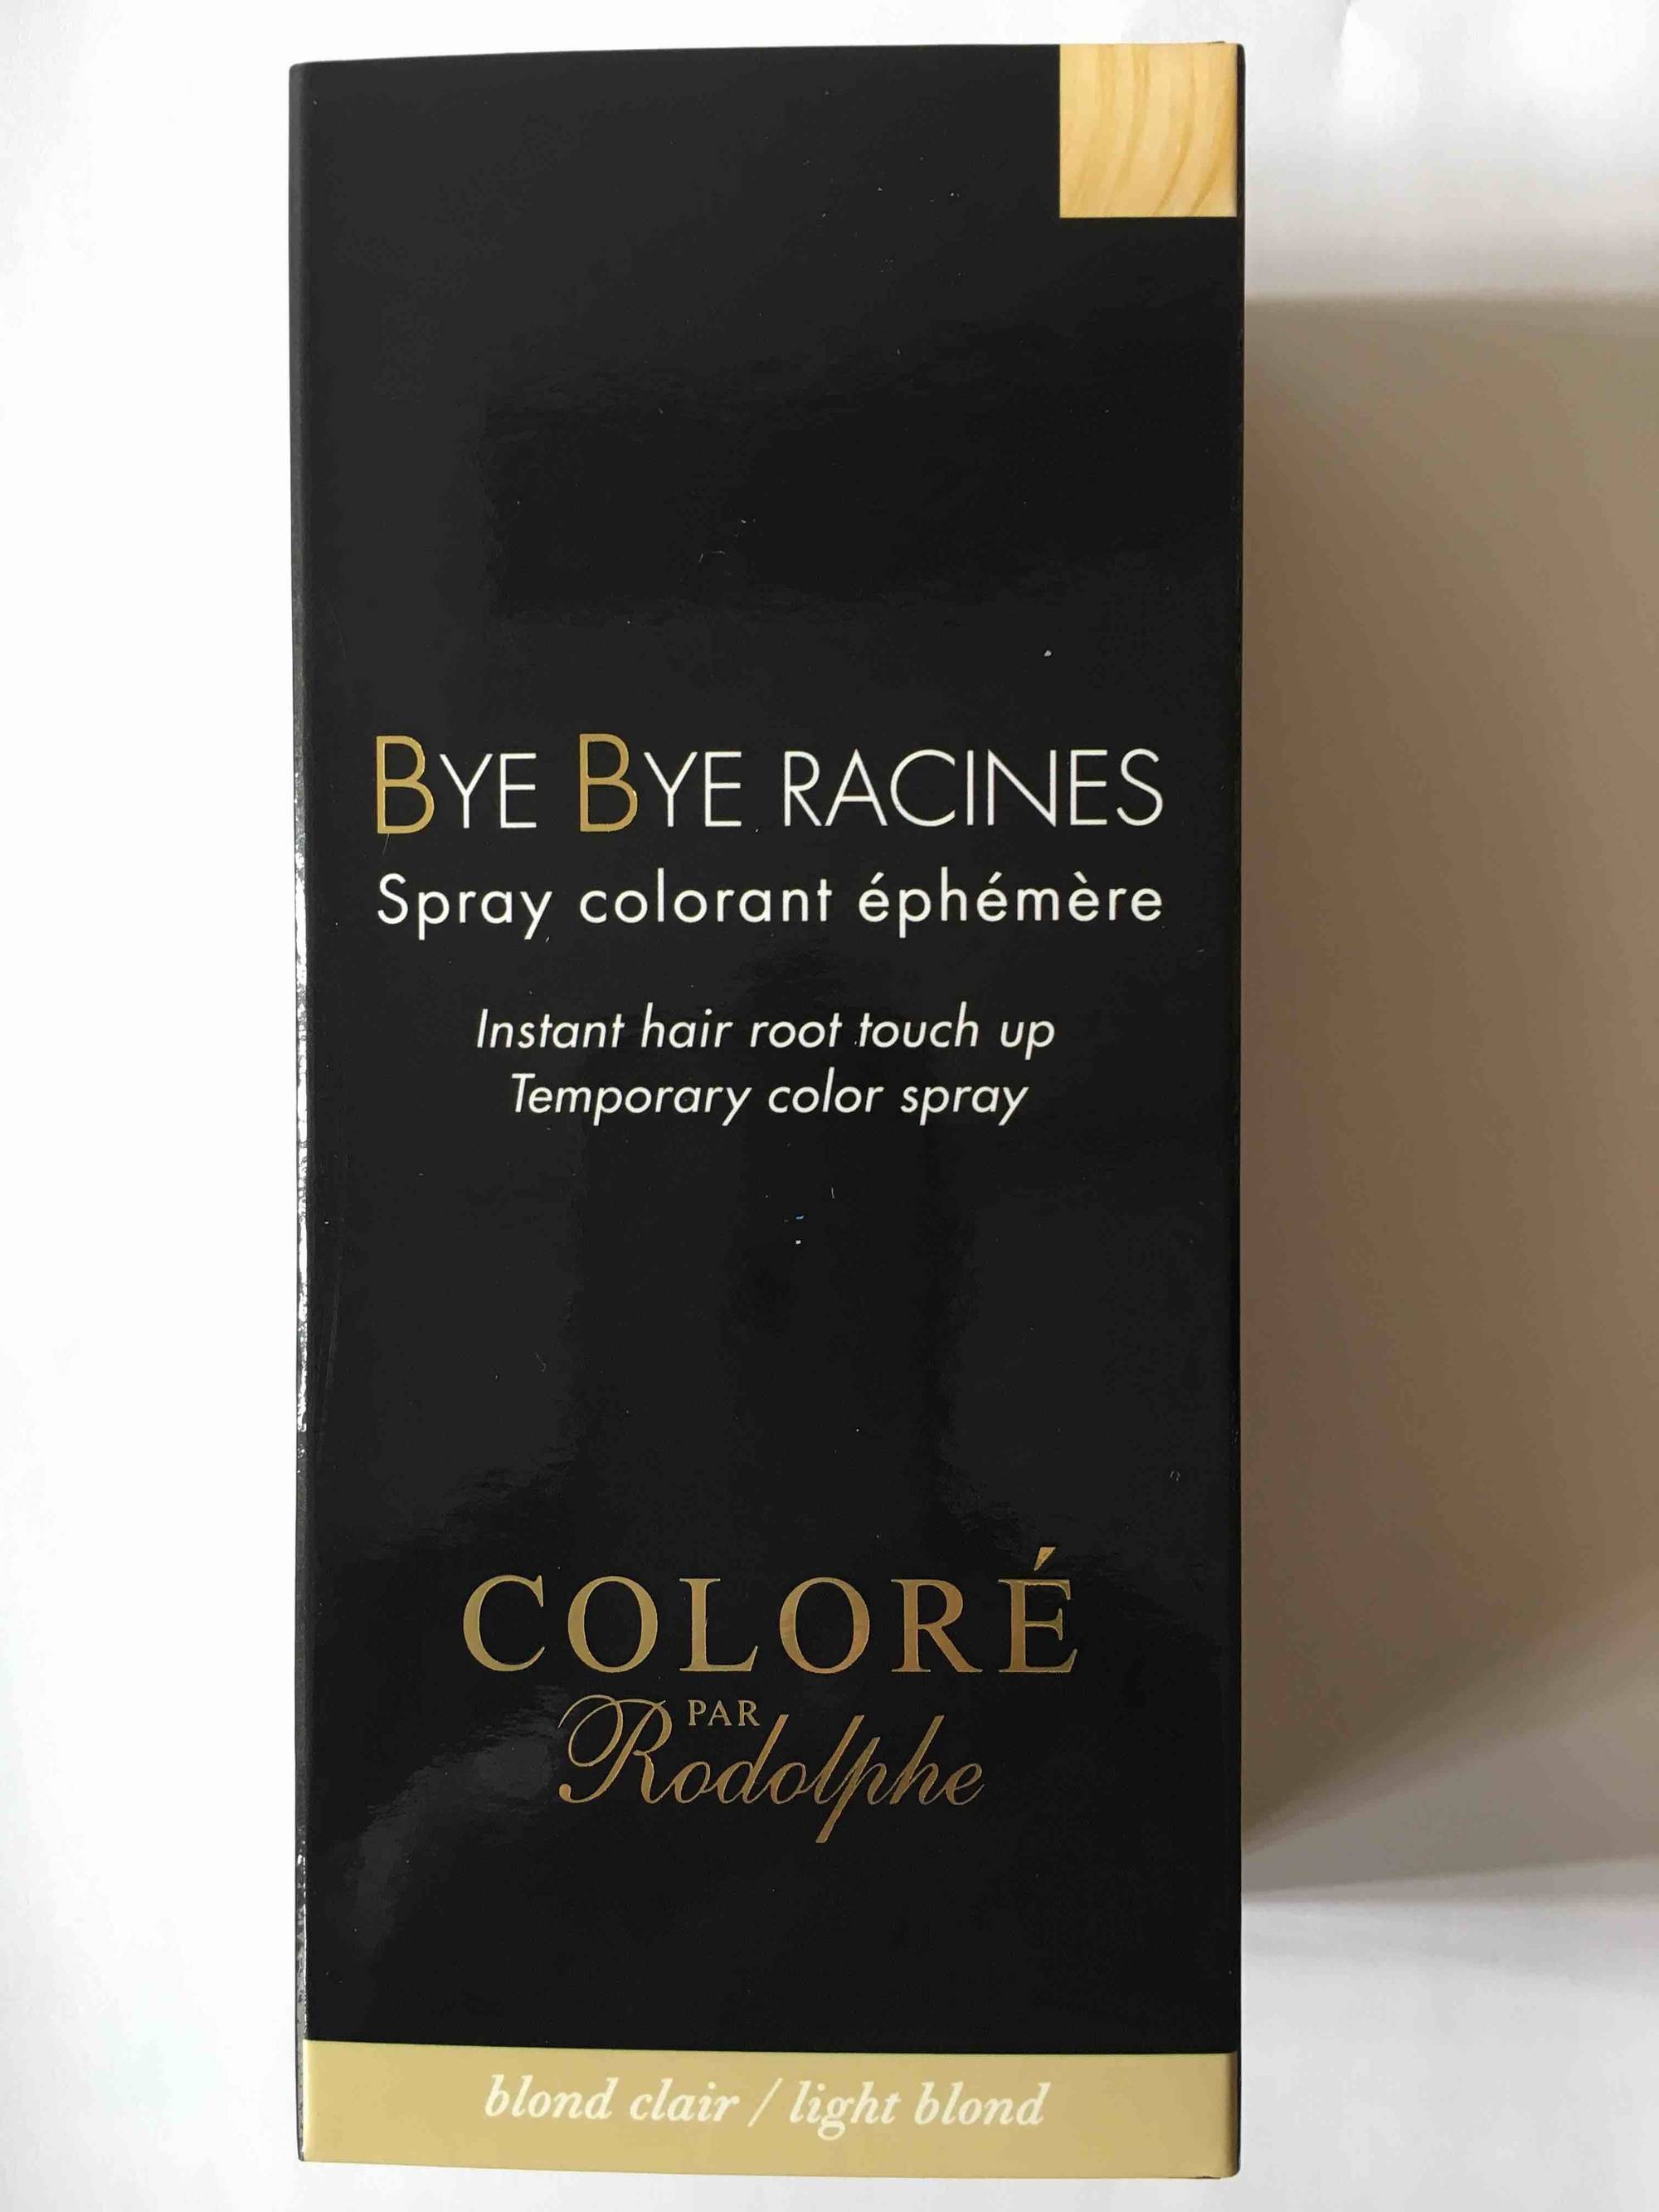 COLORÉ PAR RODOLPHE - Bye Bye Racines - Spray colorant éphémère blond clair